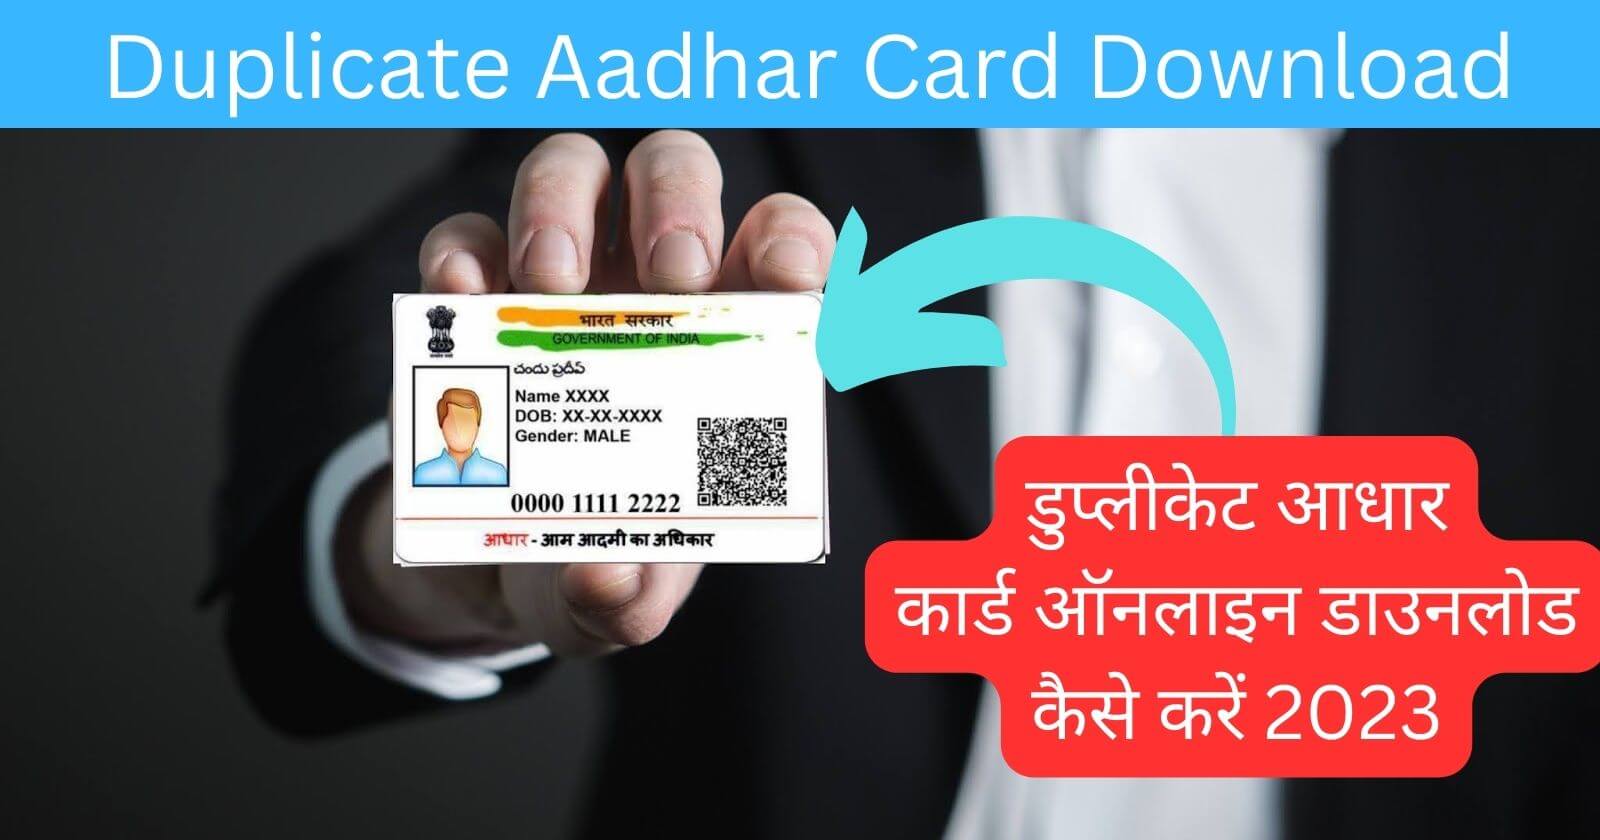 Duplicate Aadhaar Card Download